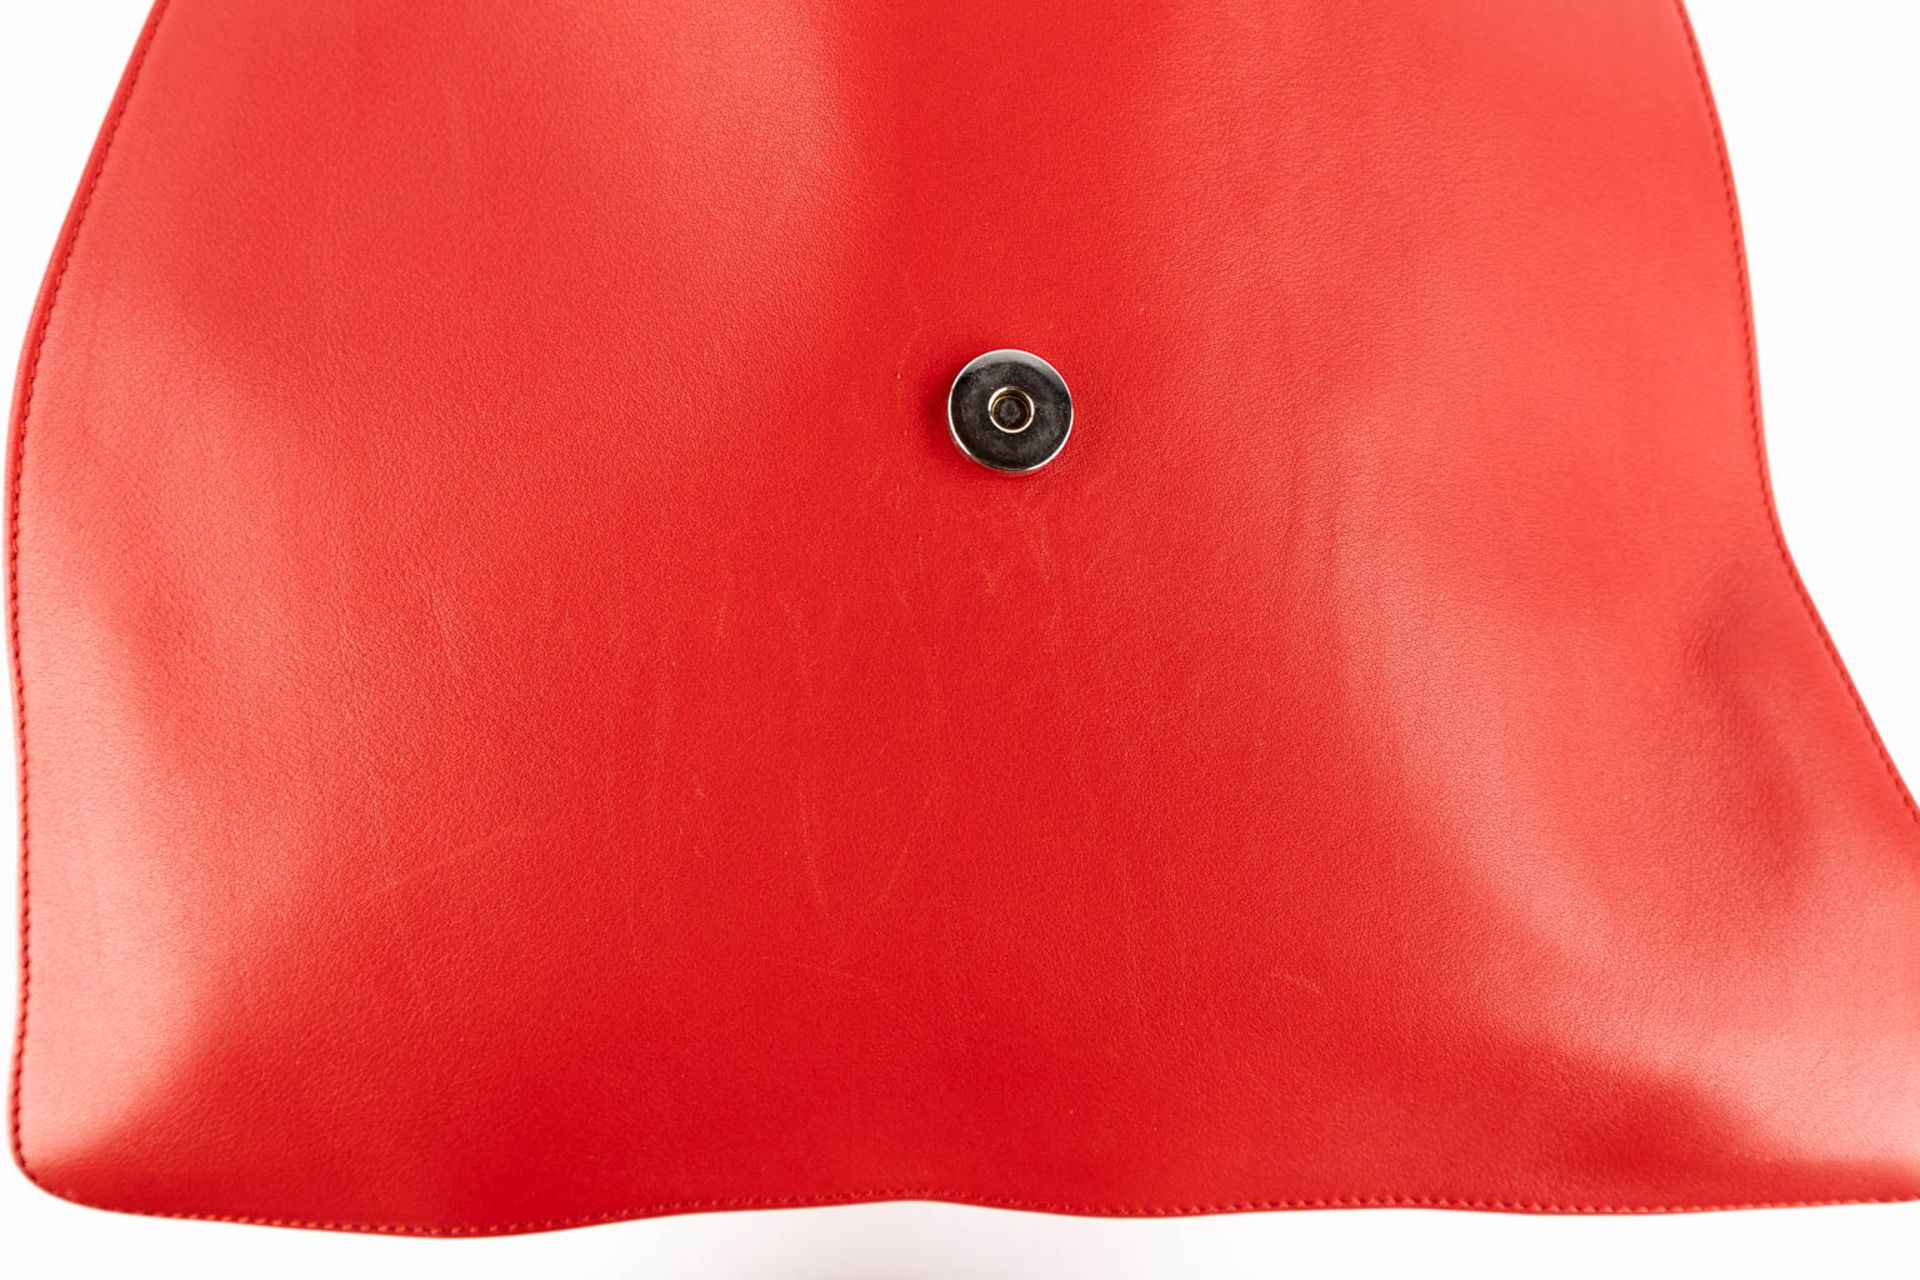 Escada, a handbag made of red leather. (W:33 x H:28 cm) - Bild 13 aus 17